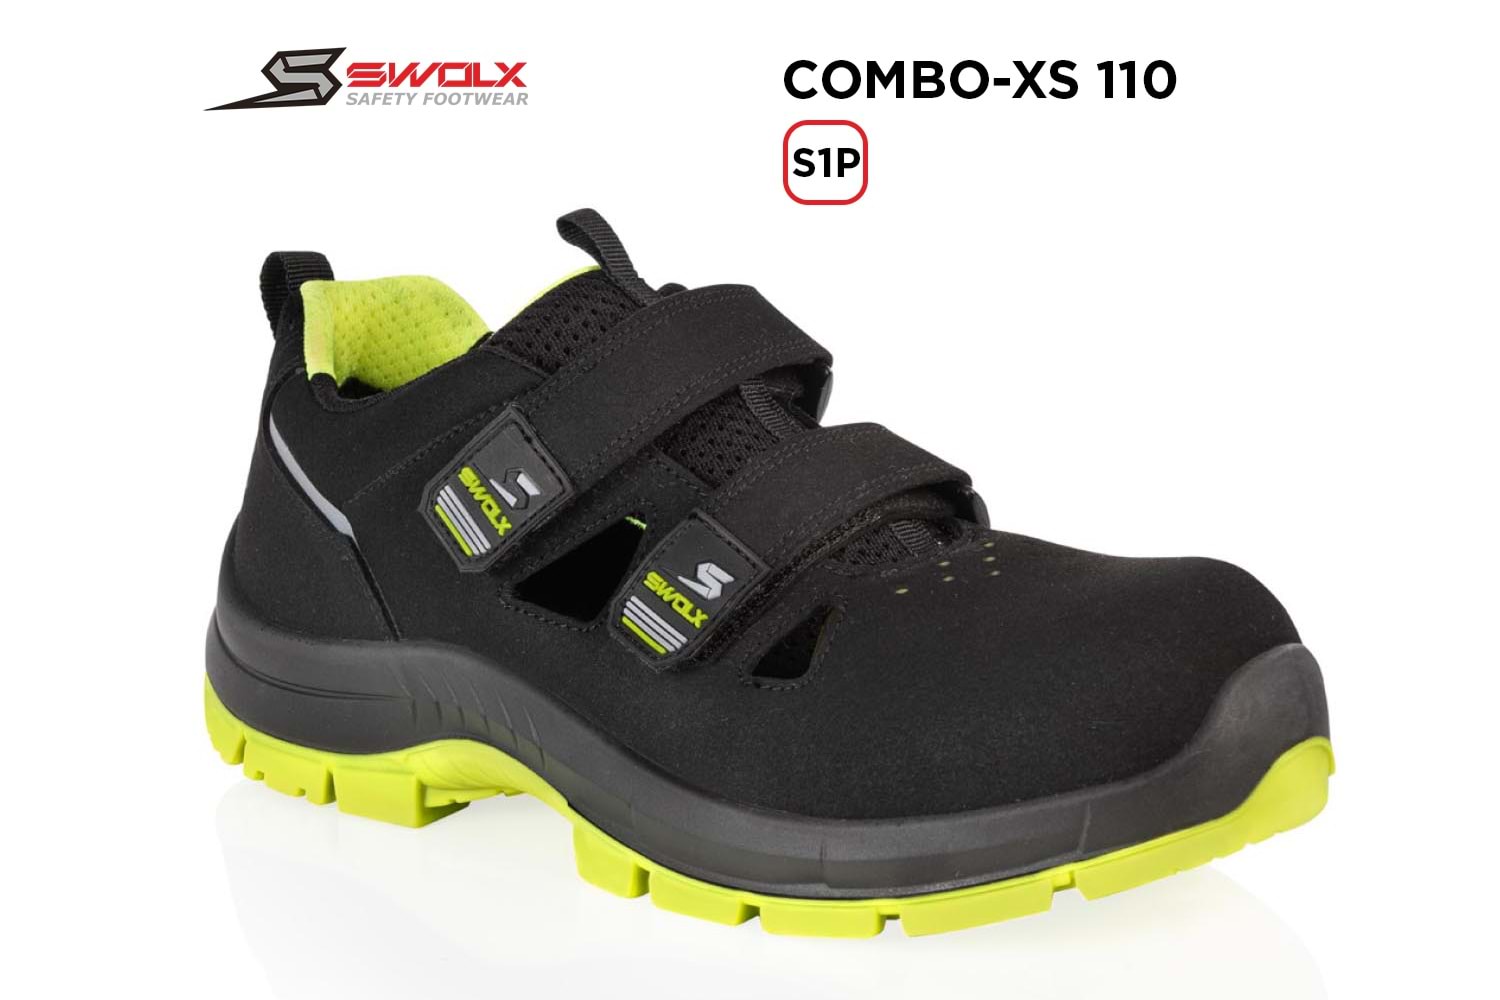 Swolx İş Ayakkabısı - Combo-Xs 110 S1P (Sun-X 110) - 47